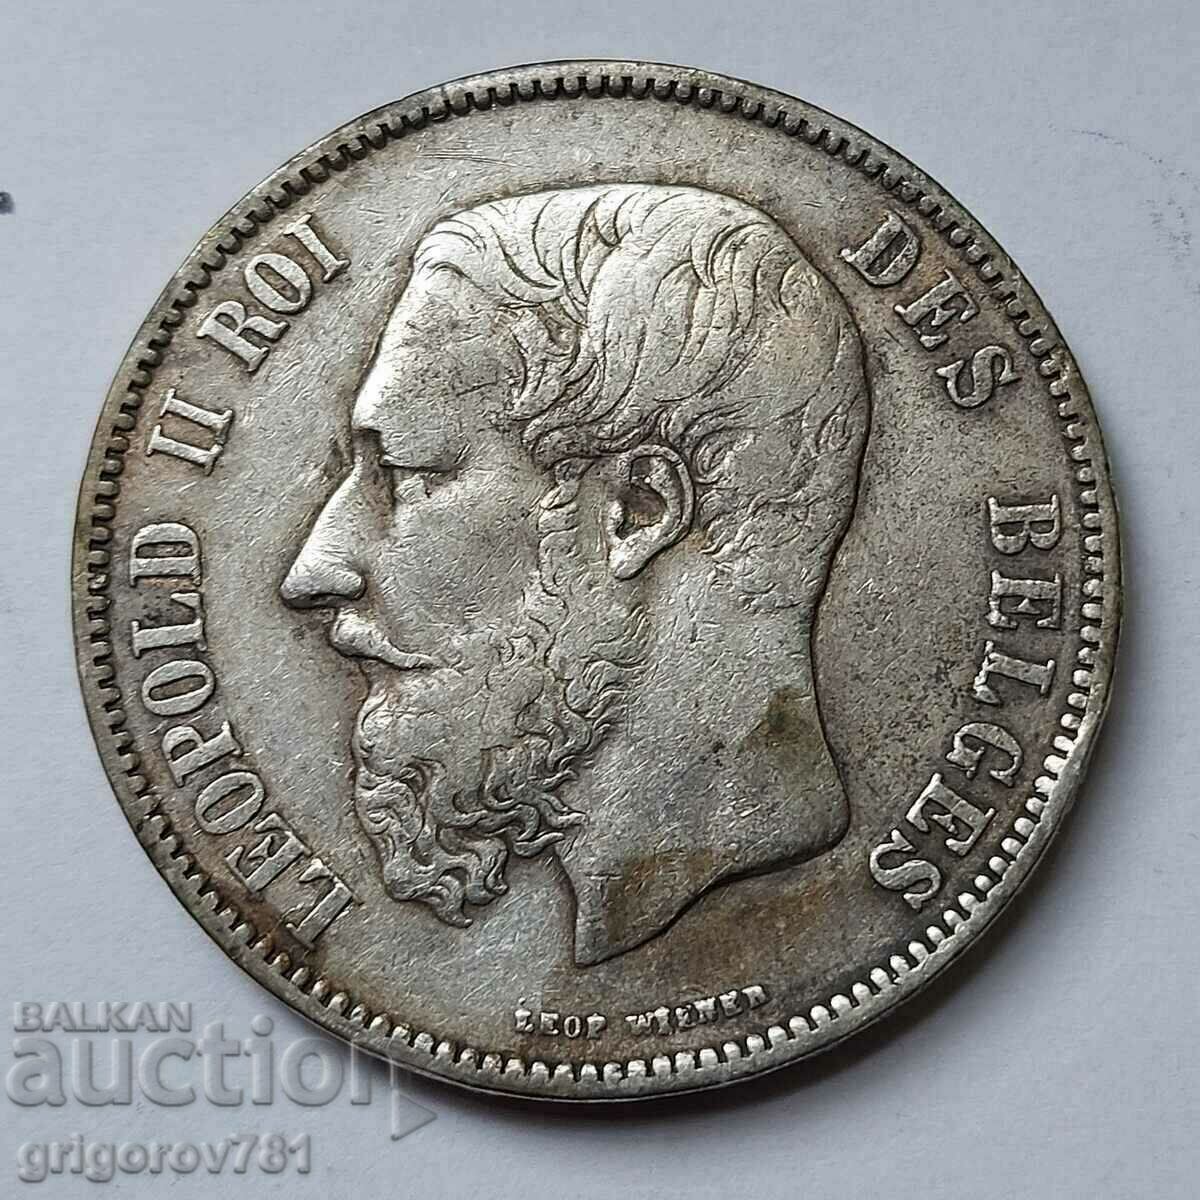 5 Francs Silver Belgium 1872 - Silver Coin #112